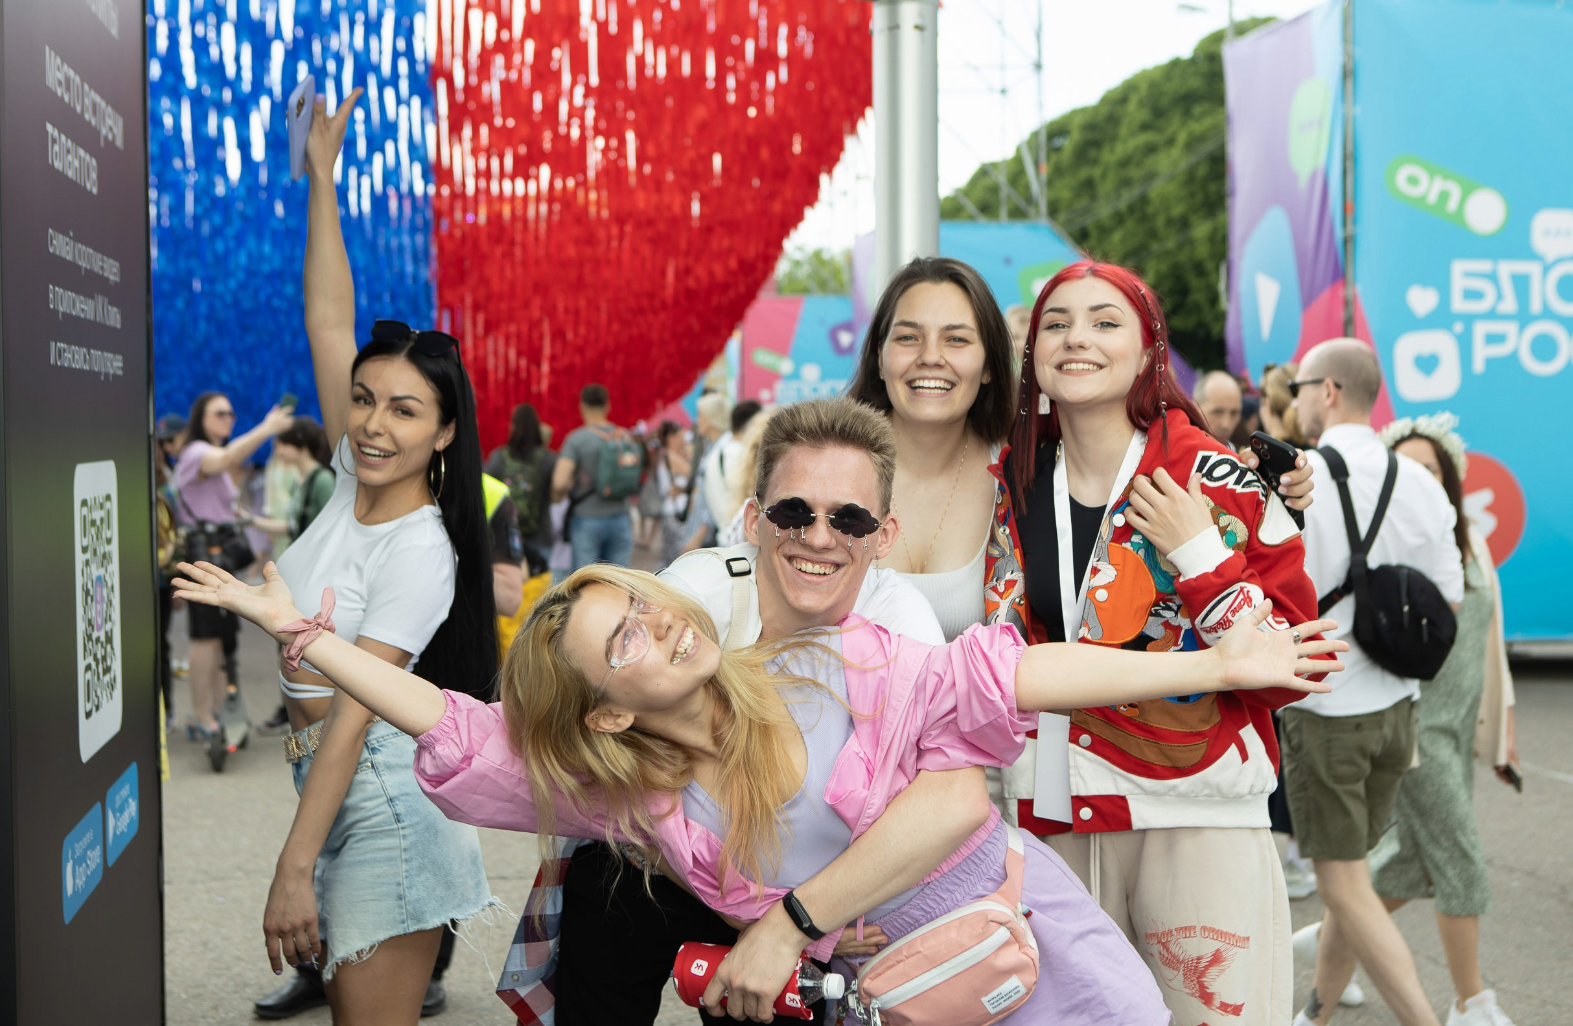 Фестиваль "Блогеры России" пройдёт 12 июня в пяти городах